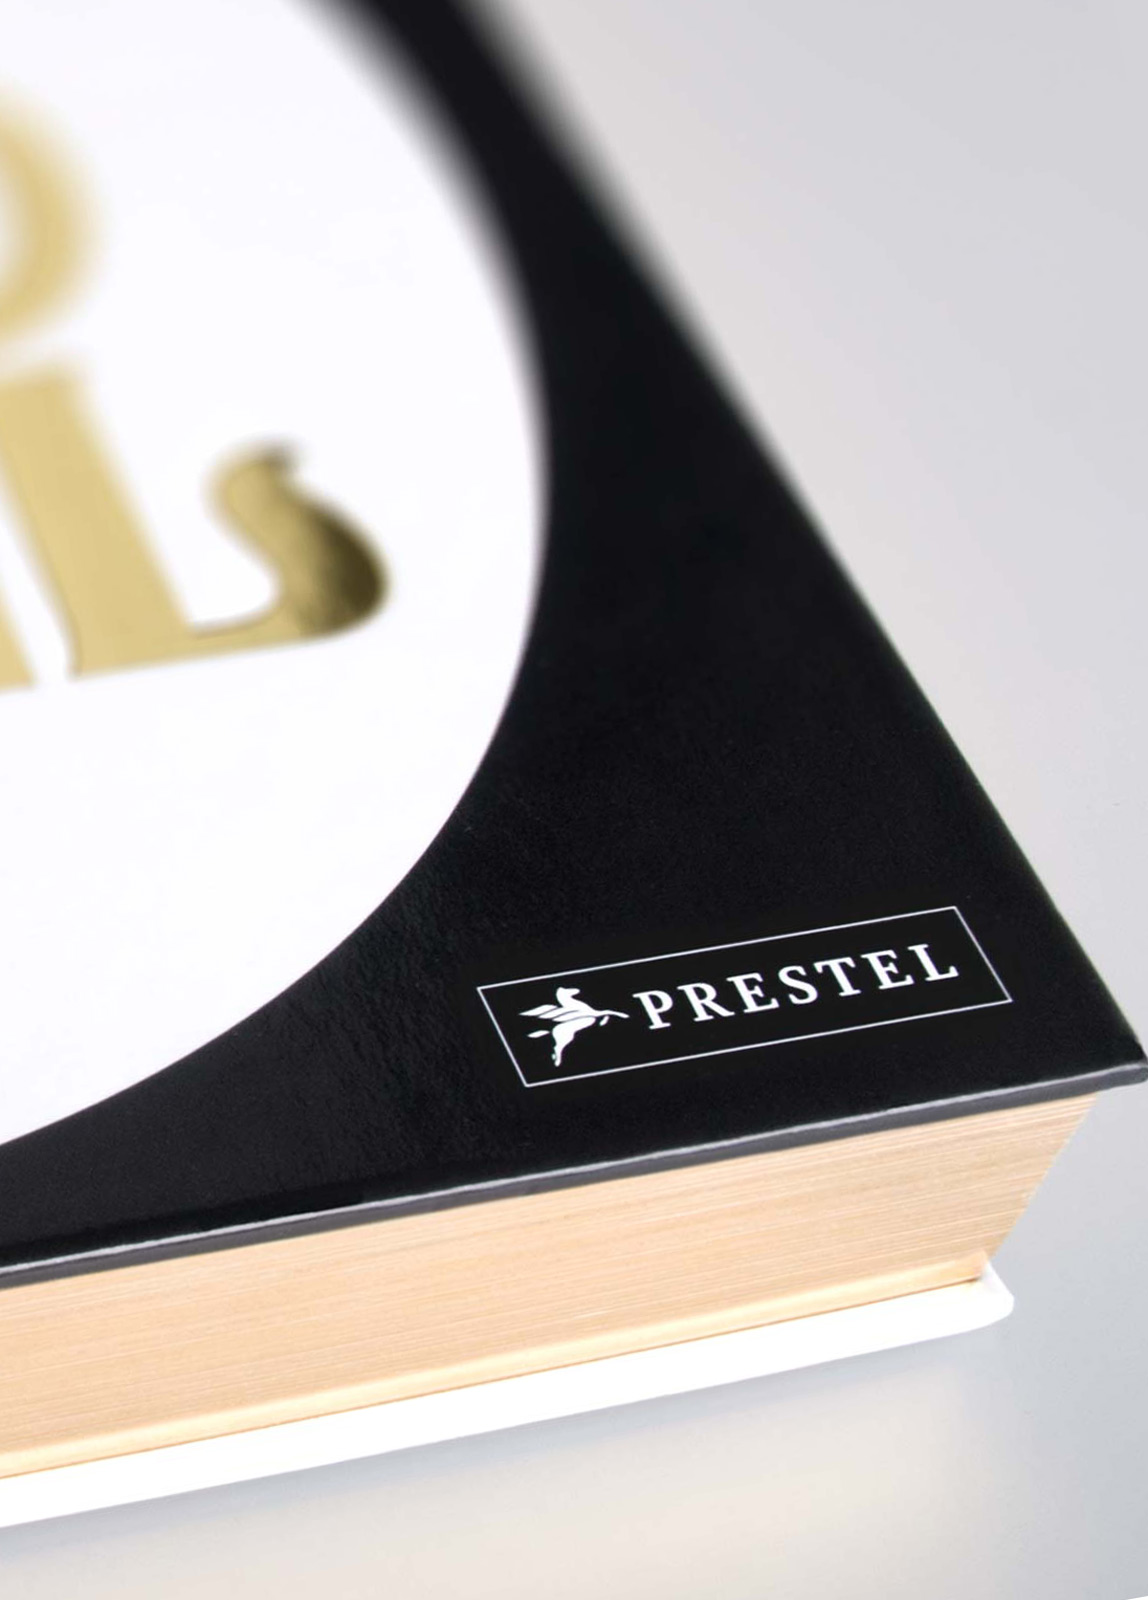 Entwicklung des Corporate Designs für Prestel